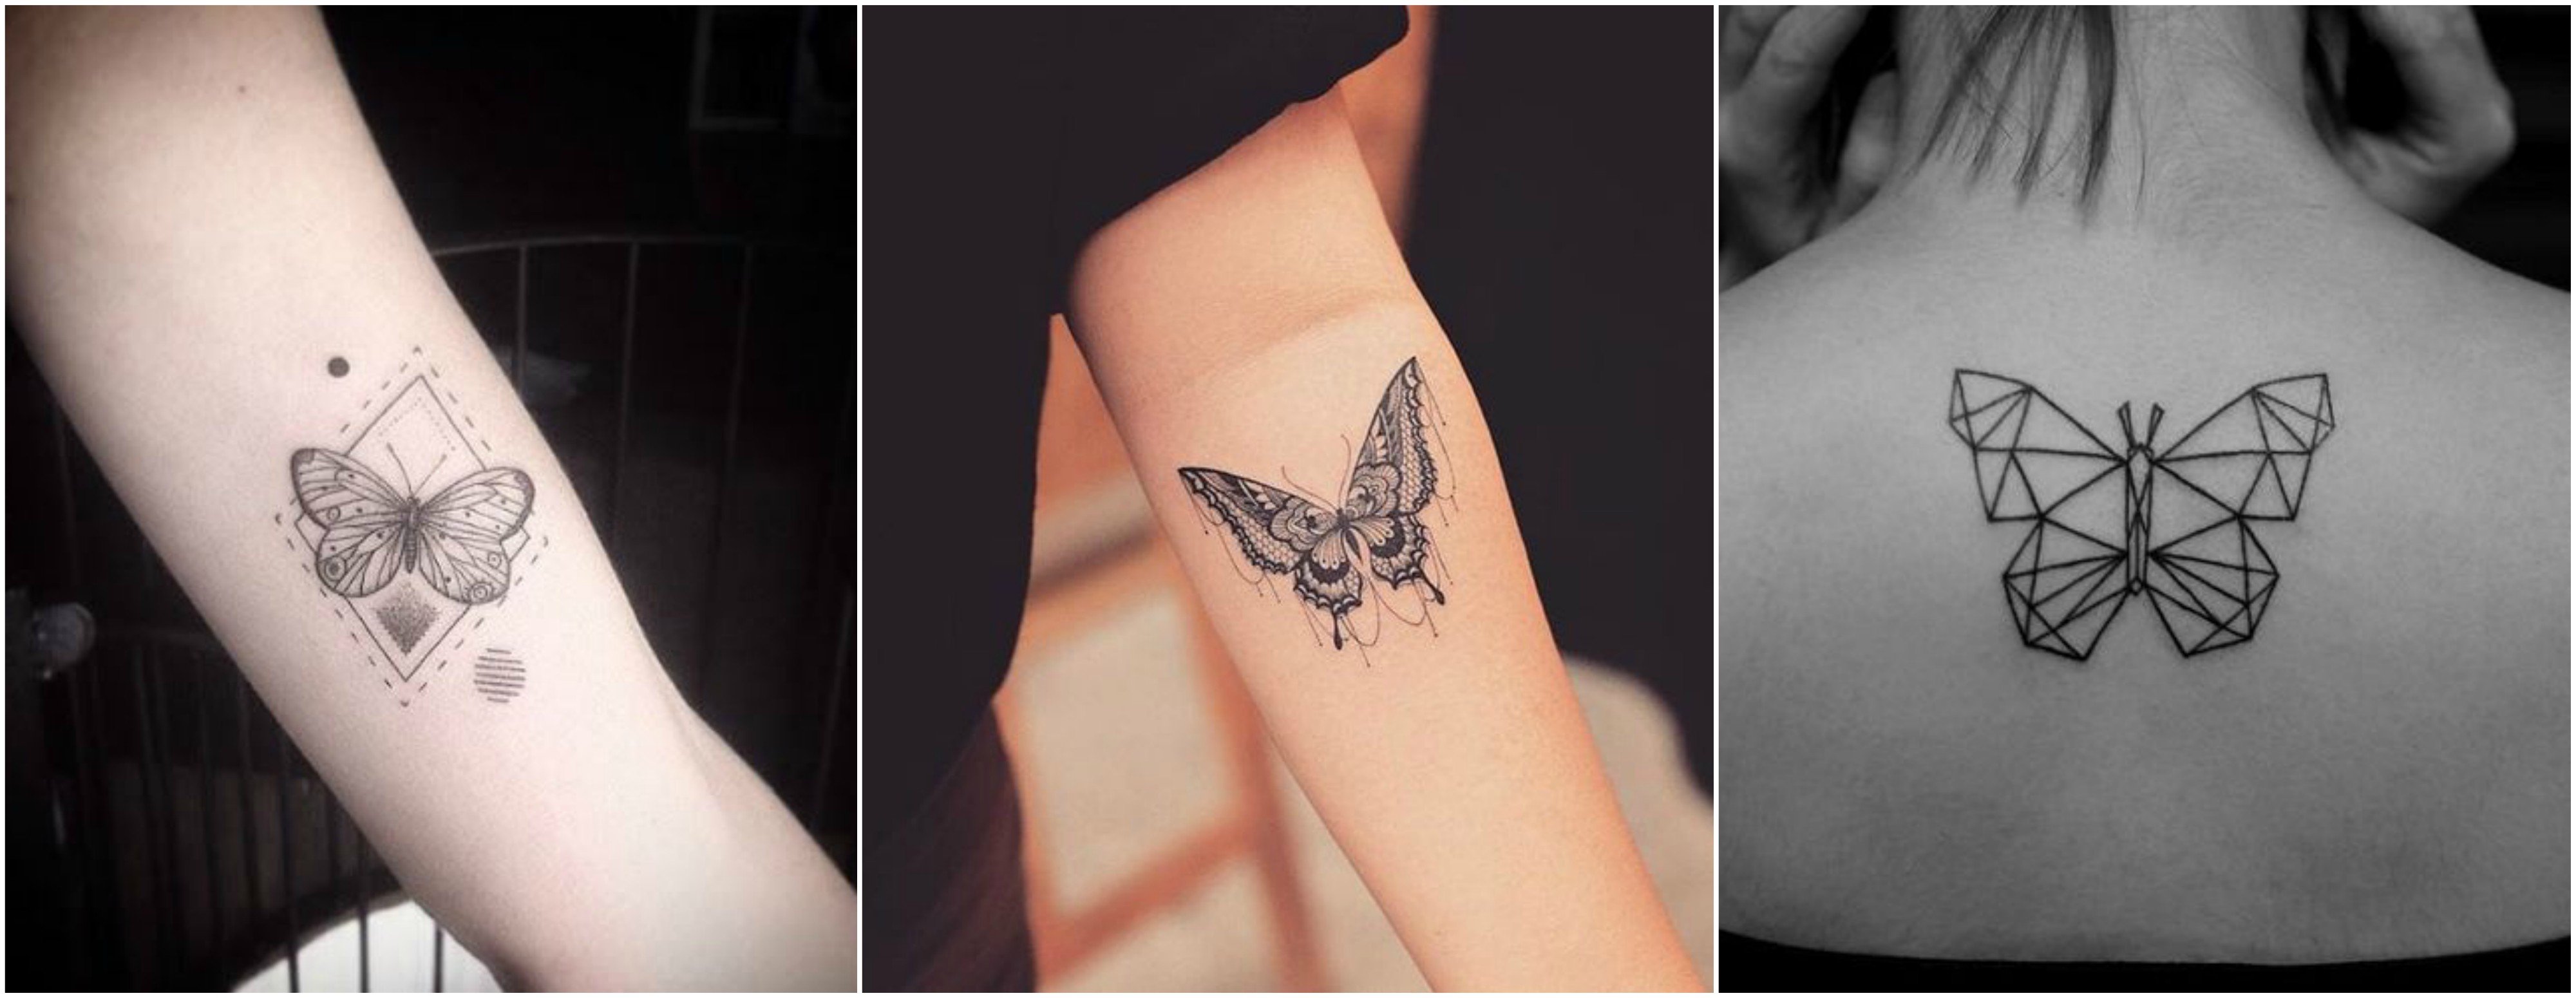 6 Tattoo Designs To Get Over Heartbreak In 2019